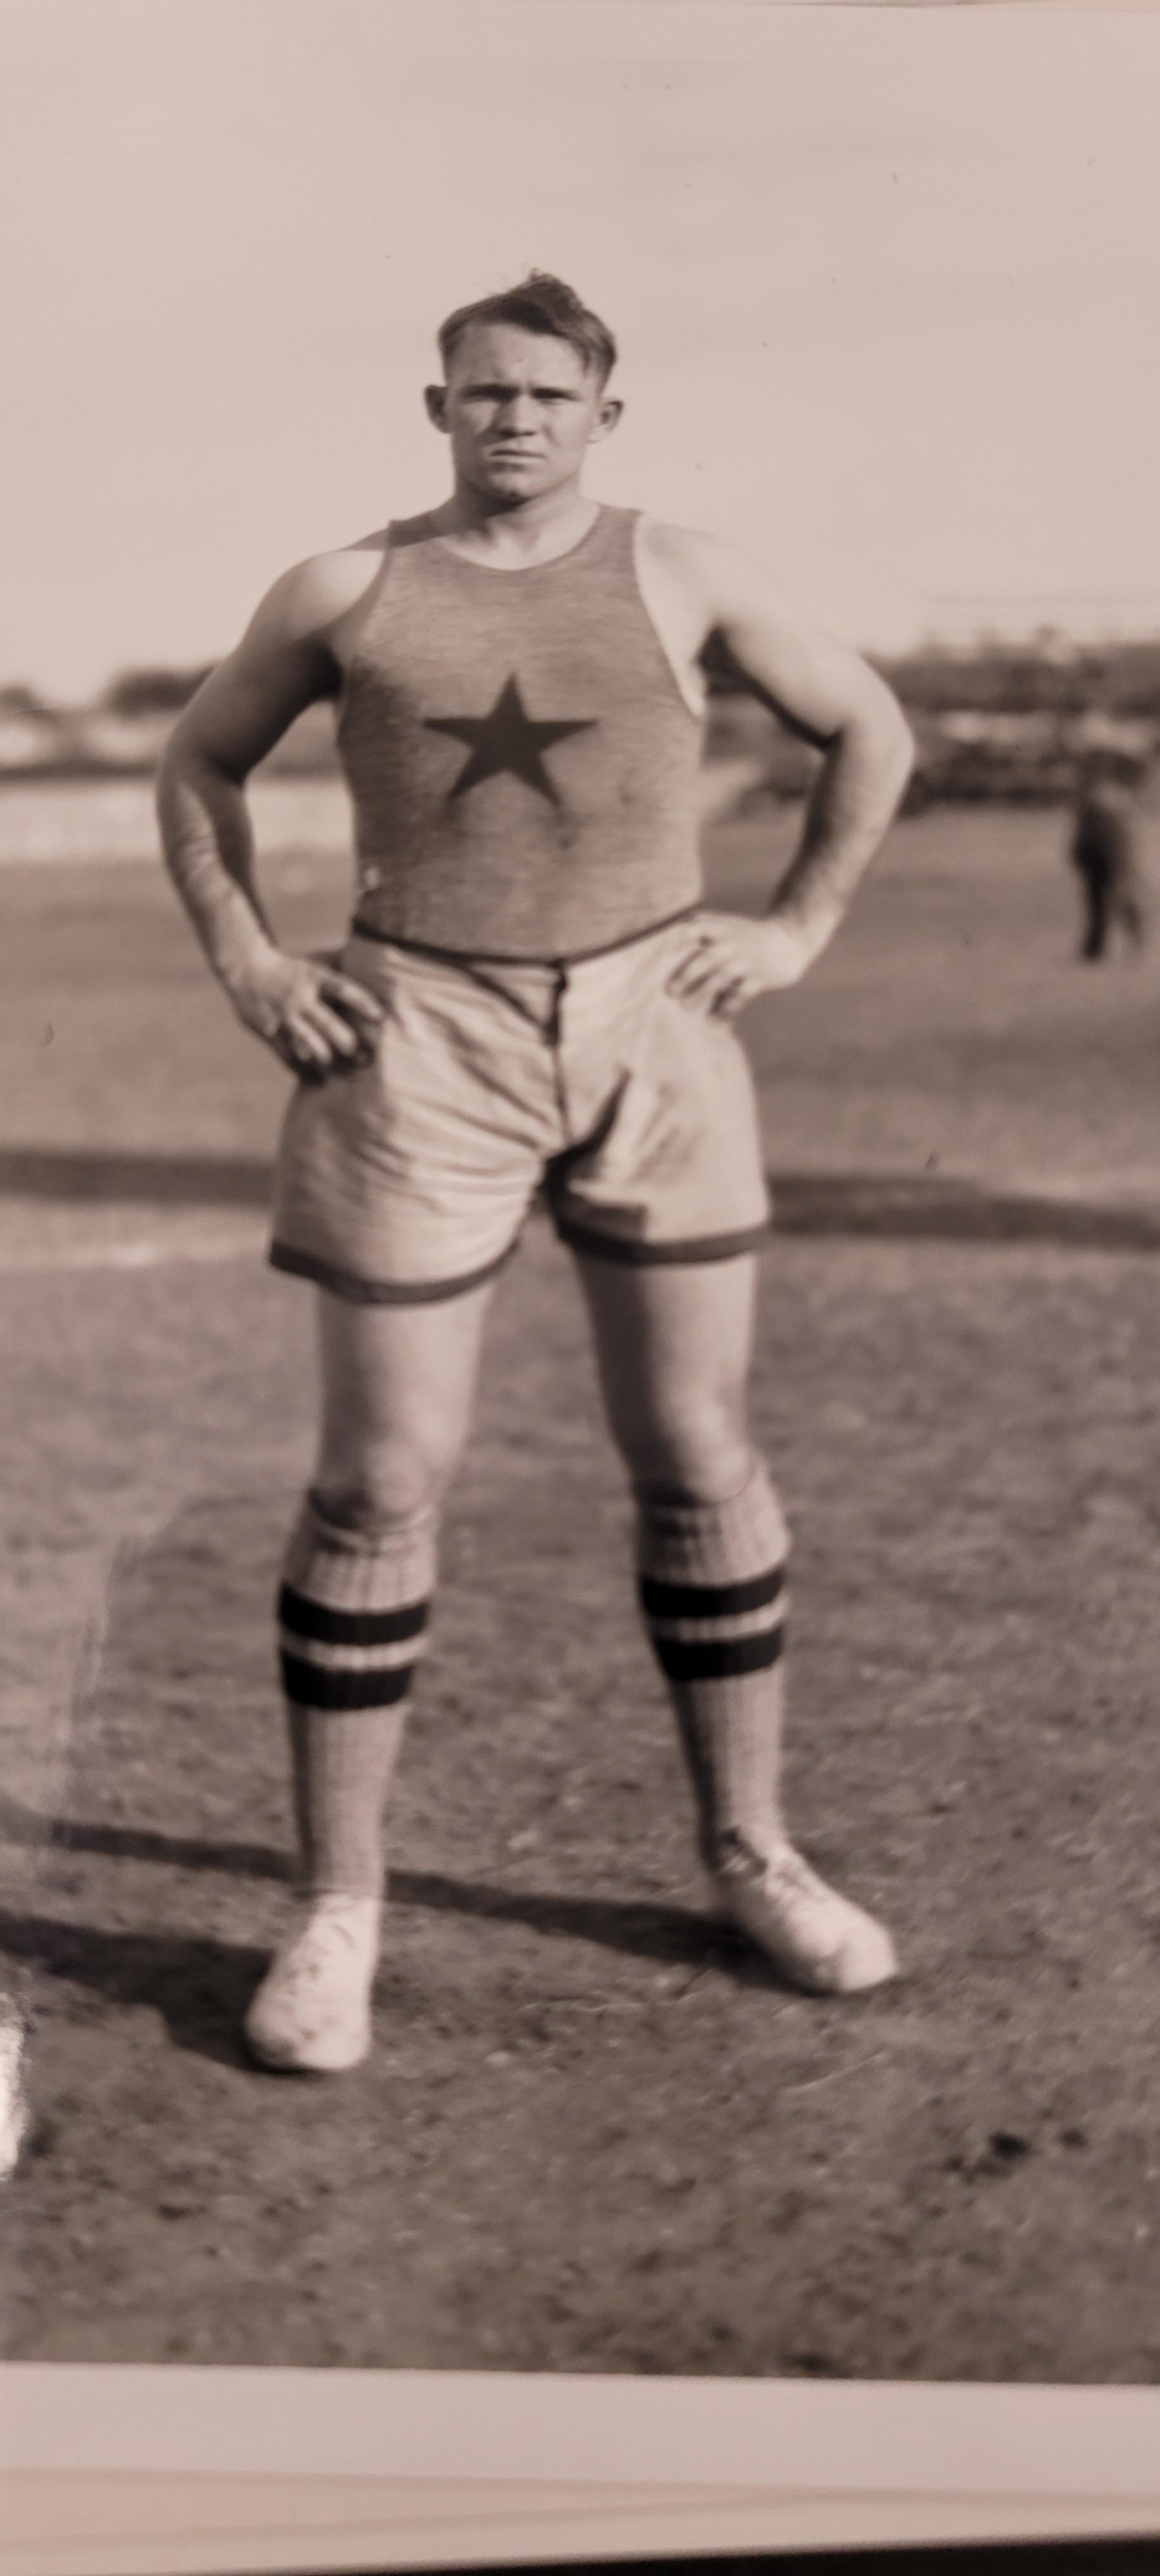  1913 two sports star Pete Edmonds in basketball uniform.jpg 